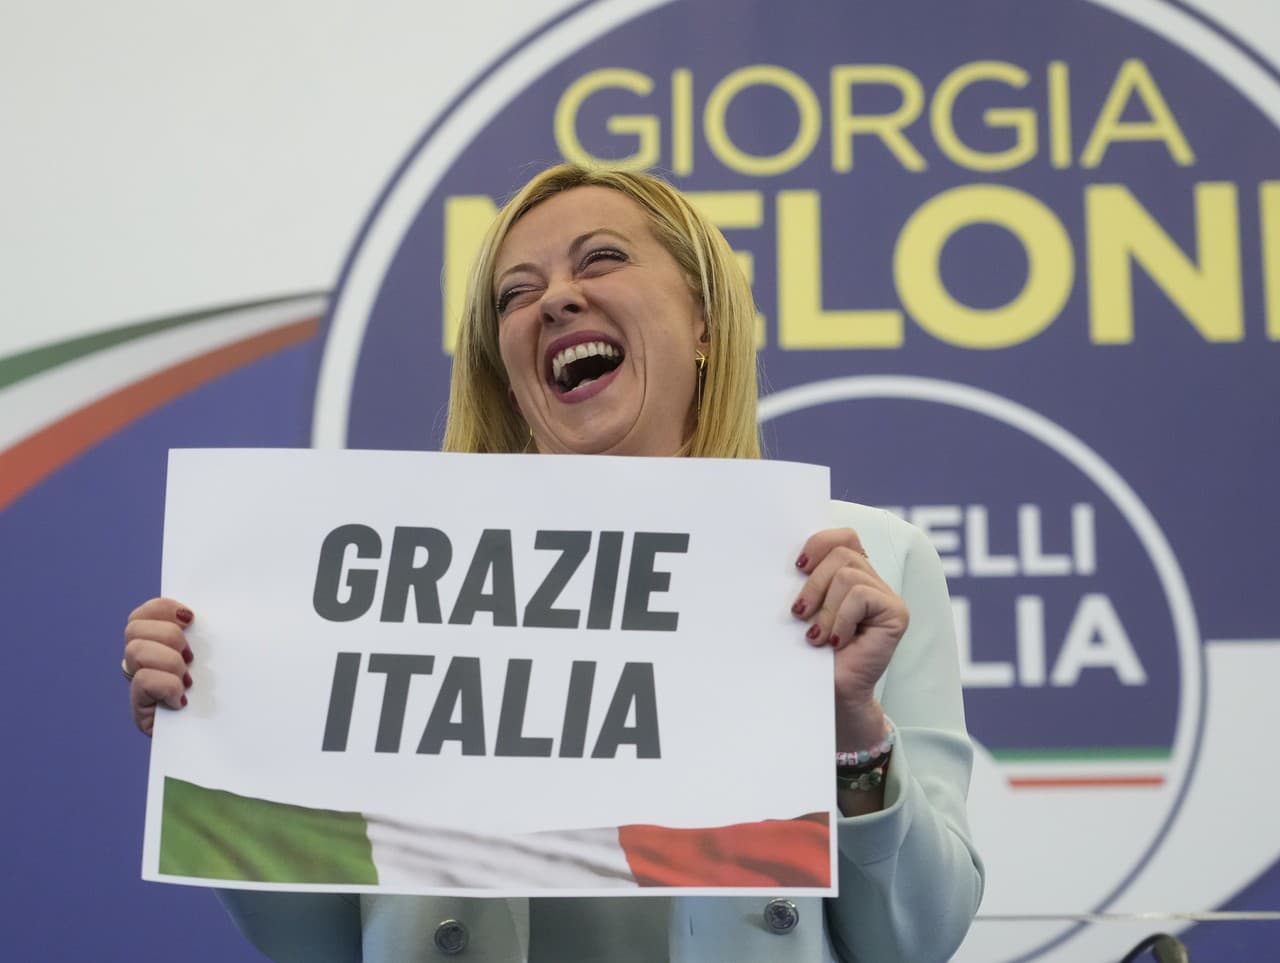 Líderka krajne pravicovej strany Bratia Talianska Giorgia Meloniová chce byť oslovovaná mužským titulom.